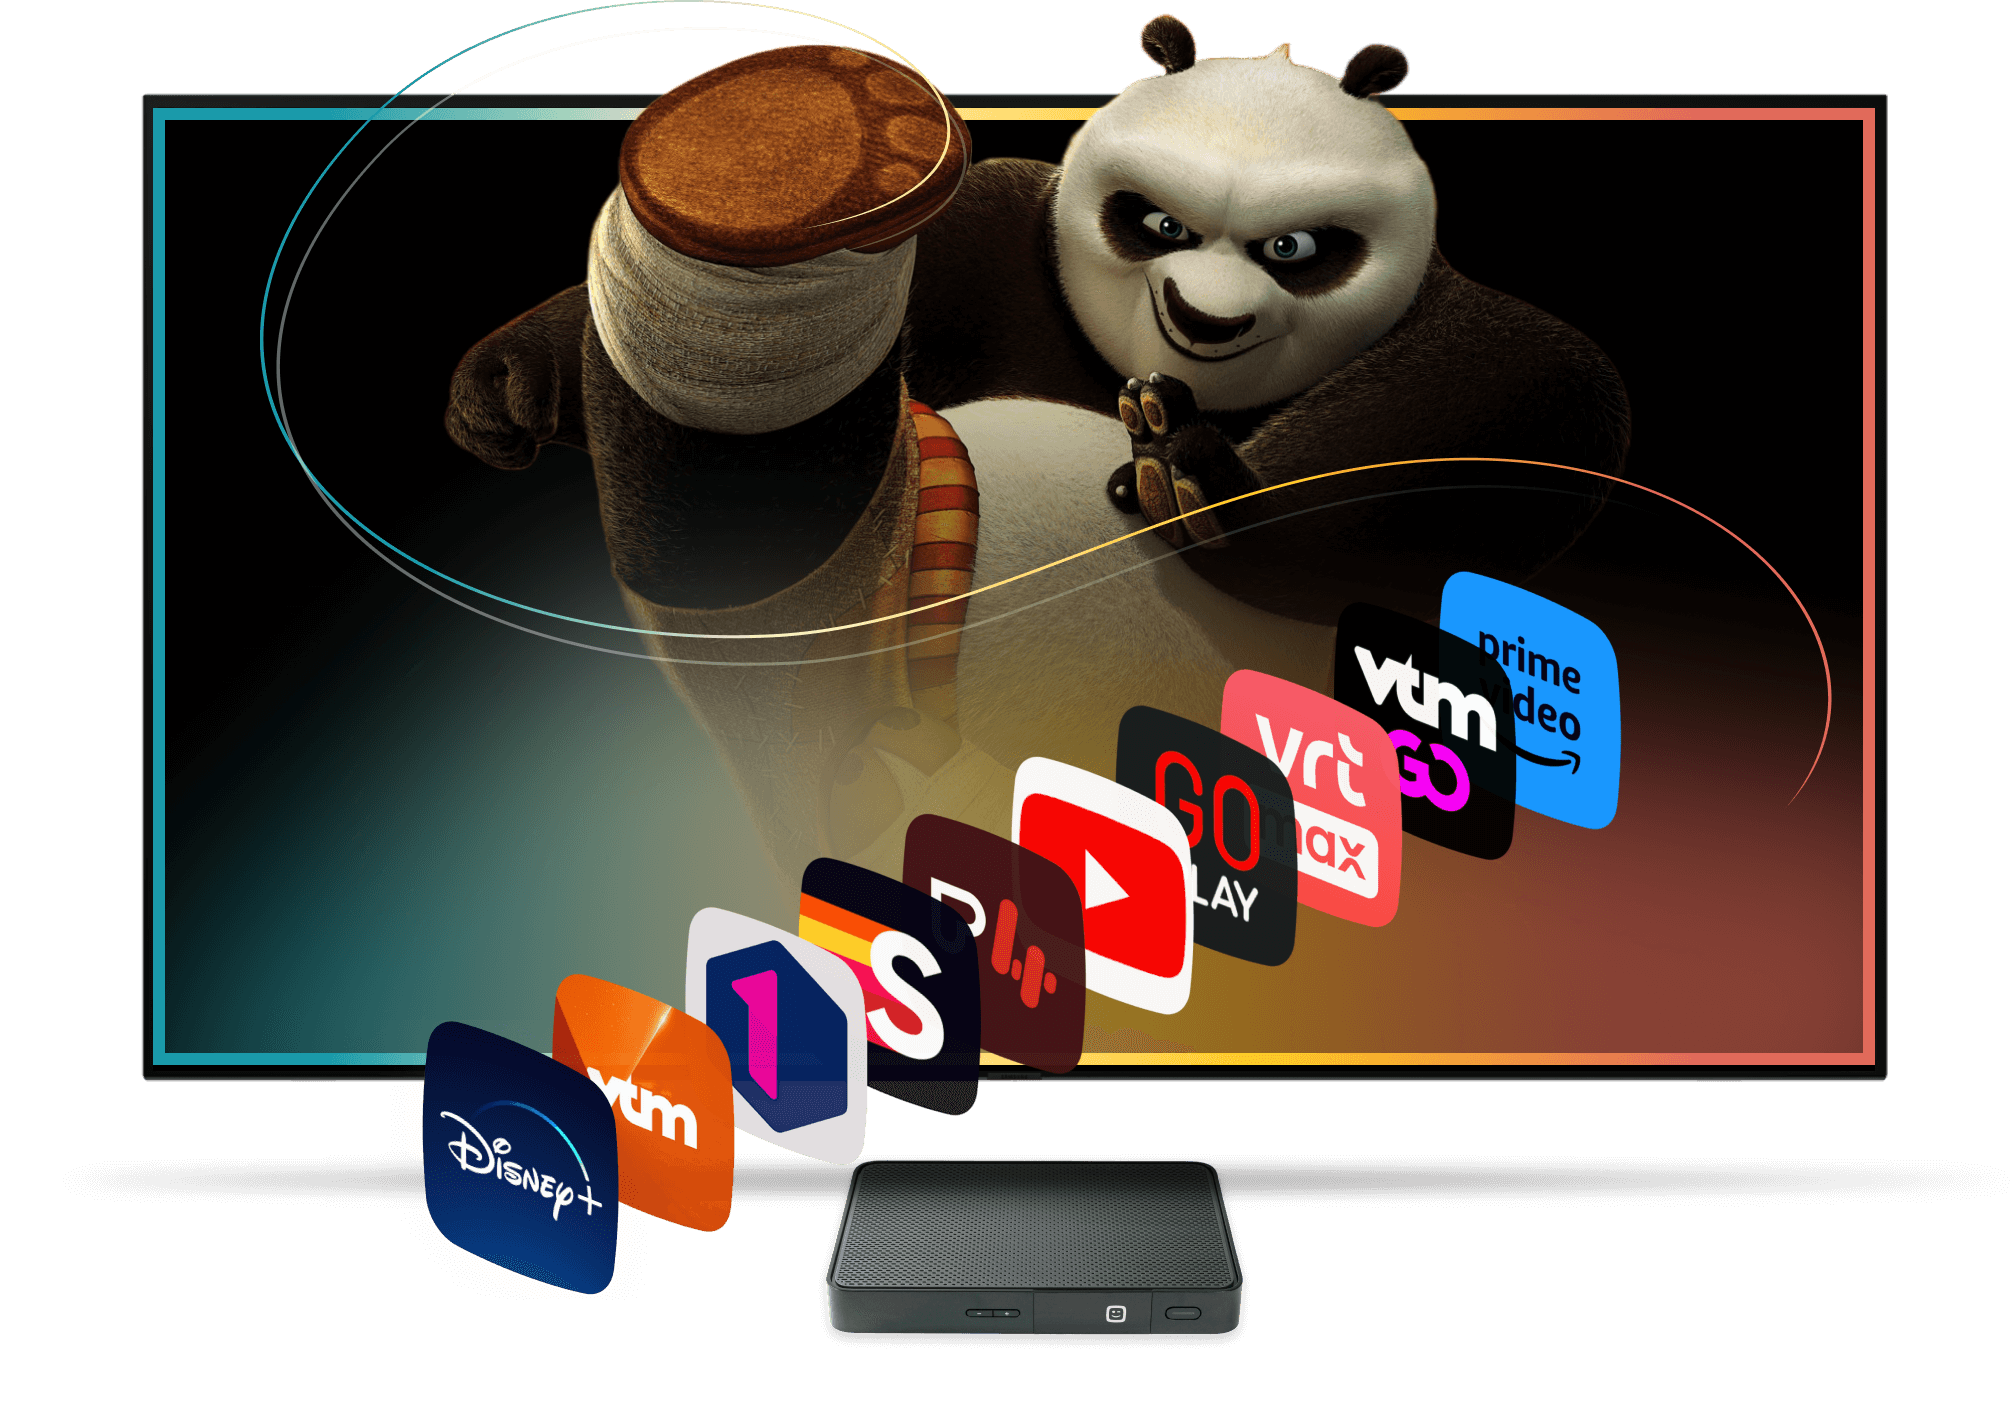 Kung Fu Panda op de achtergrond van ons TV aanbod